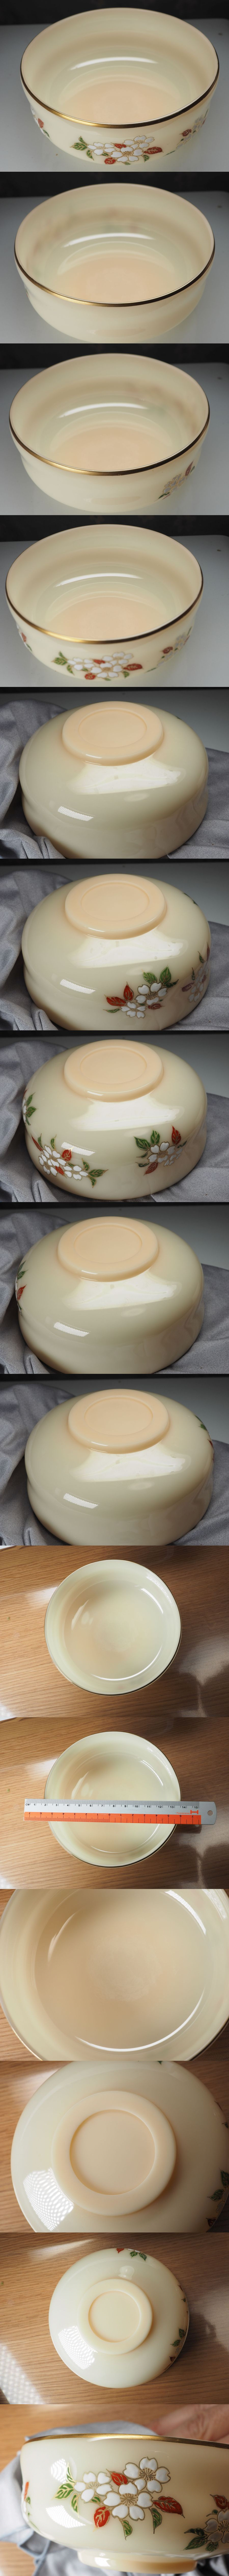 限定品お得京セラ『玉磁』 稲盛 宝玉で作られた茶碗 人造サファイア・ルビーと同等の物質 宋